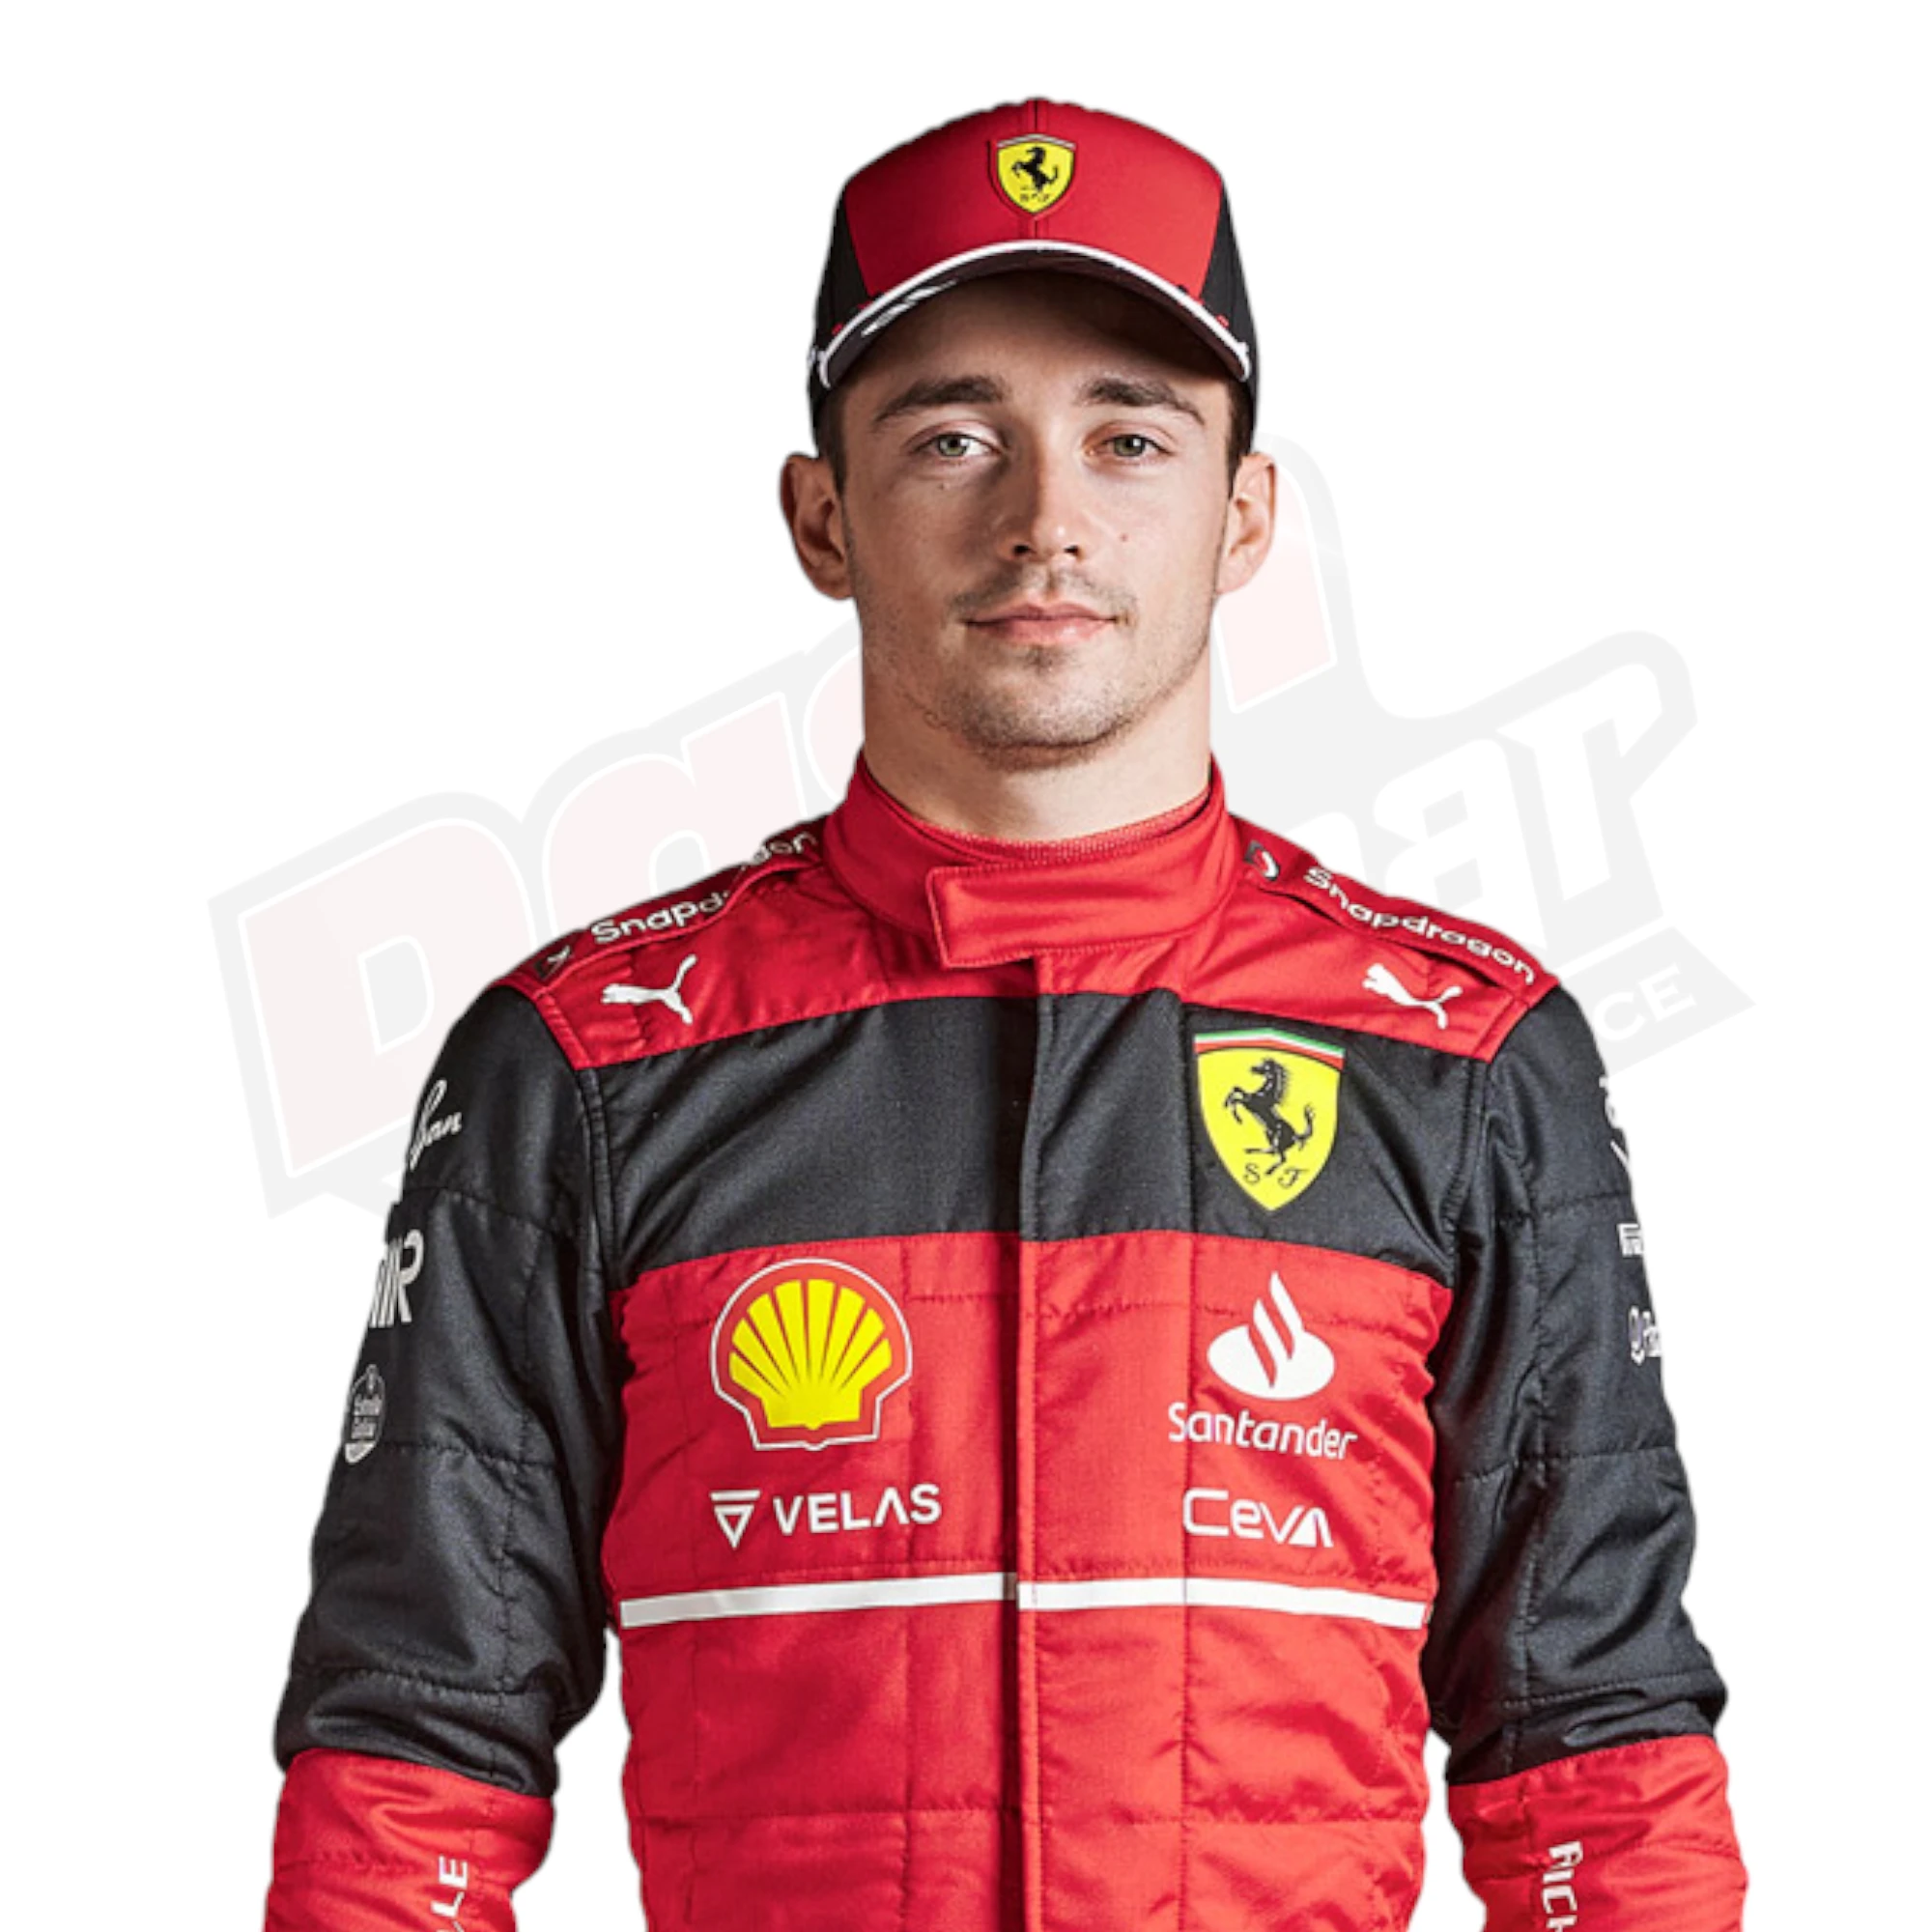 New Charles Leclerc 2022 Race Suit